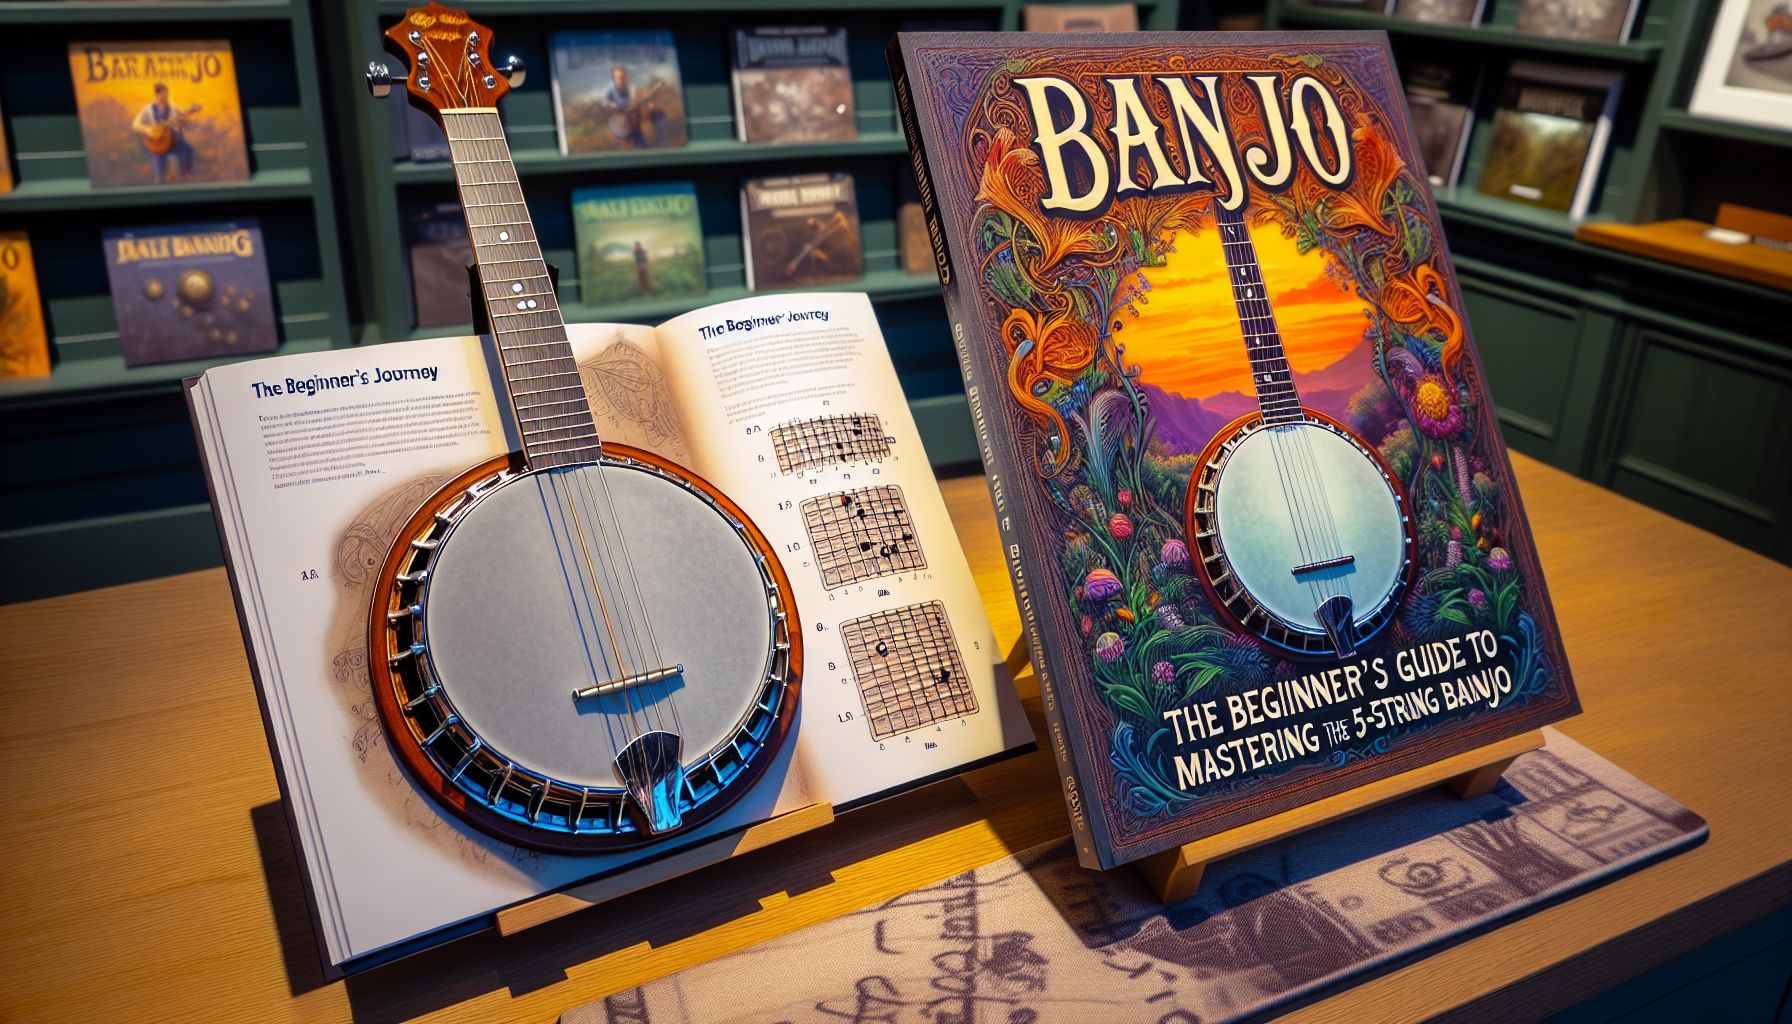 Banjo: The Beginner’s Guide to Mastering the 5-String Banjo